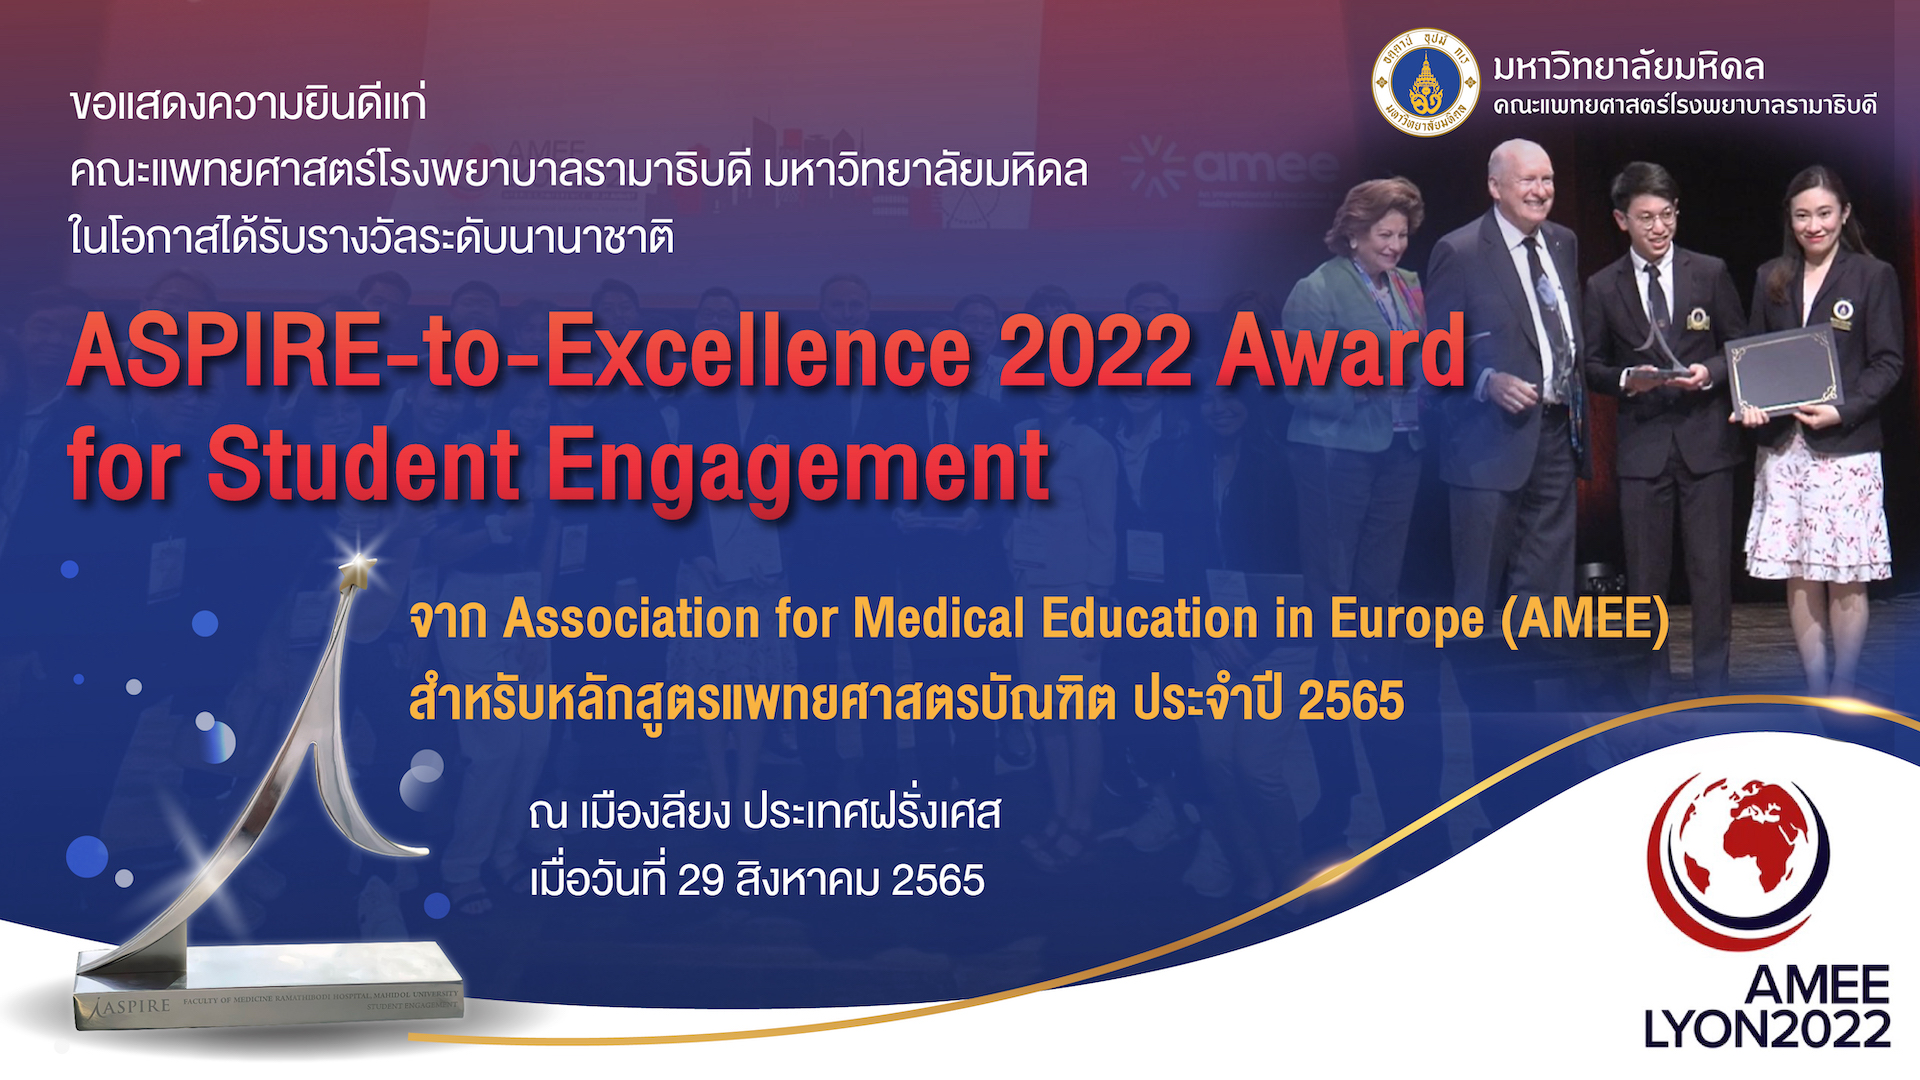 คณะแพทยศาสตร์โรงพยาบาลรามาธิบดี มหาวิทยาลัยมหิดล ได้รับรางวัลระดับนานาชาติ ASPIRE-to-Excellence 2022 Award for Student Engagement จาก Association for Medical Education in Europe (AMEE) สำหรับหลักสูตรแพทยศาสตรบัณฑิต ประจำปี 2565